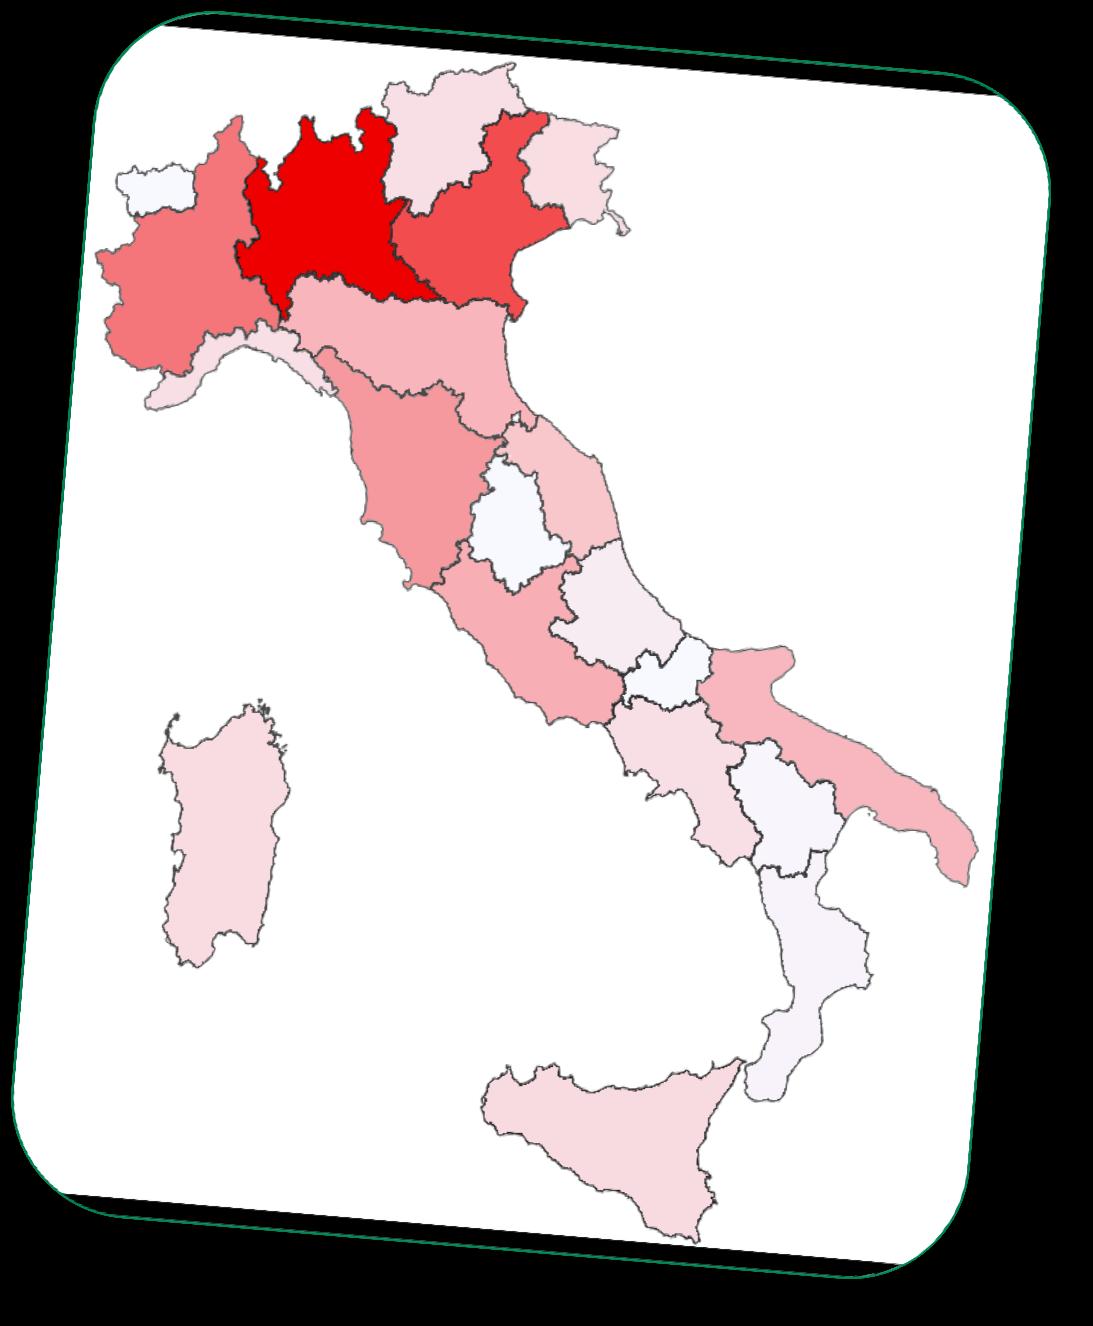 Eco-Fin Eco-Fin Fatturato imprese 00 0 Variazione Regione Tot Fatturato (milioni ) % Tot Fatturato (milioni ) % % Piemonte 44,87,% 49 0,8% -,0% Valle d'aosta 8,98 0,4% 9,76 0,% 8,69% 6,,7% 90,9,4%